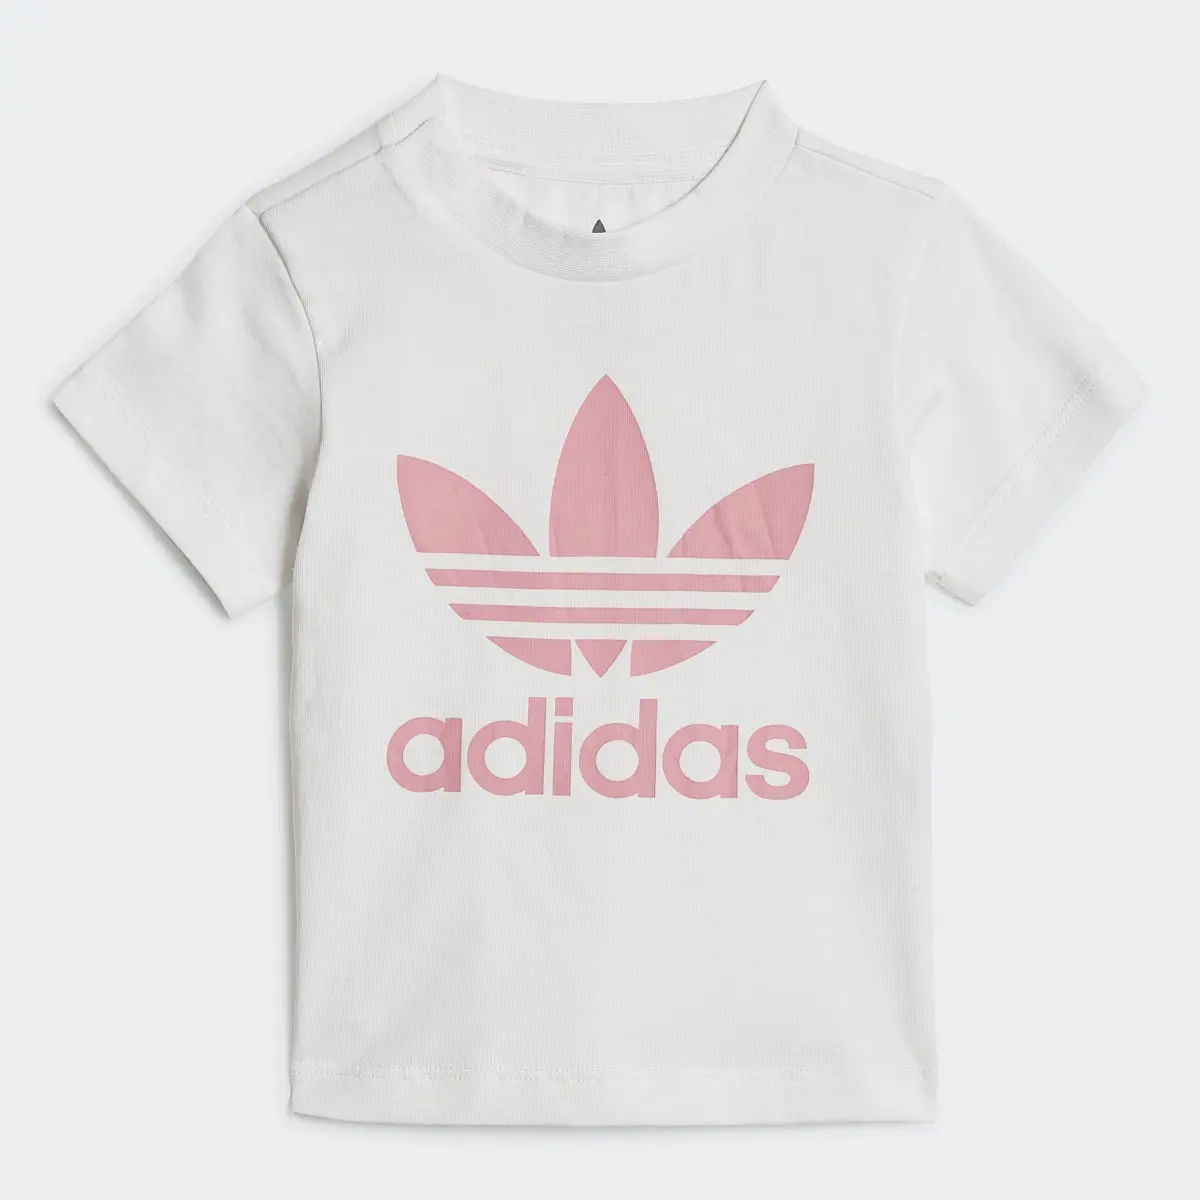 Adidas Trefoil Şort ve Tişört Takımı. 3